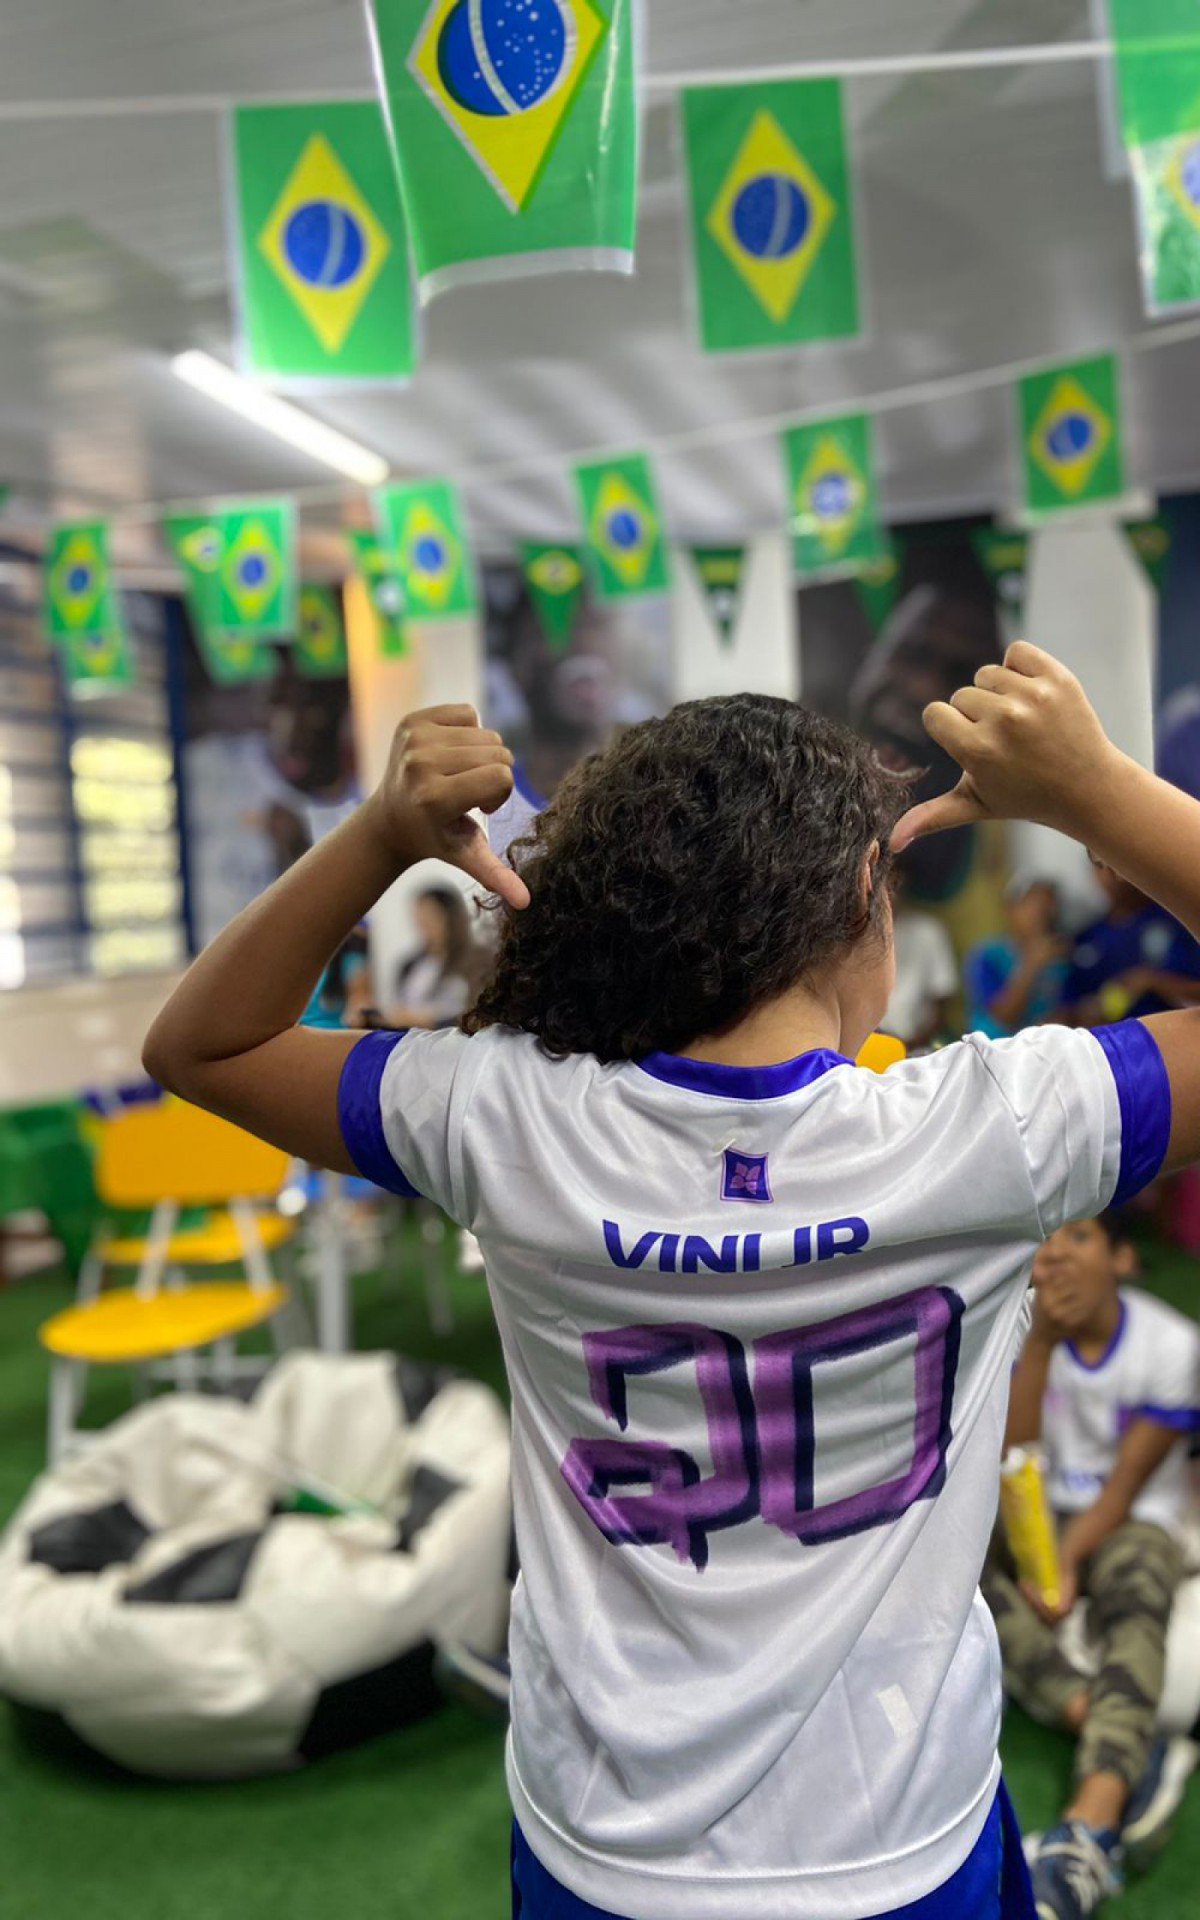 Crianças e professores comemoram a convocação do atacante Vinícius Jr. na Escola Paulo Freire  - Divulgação